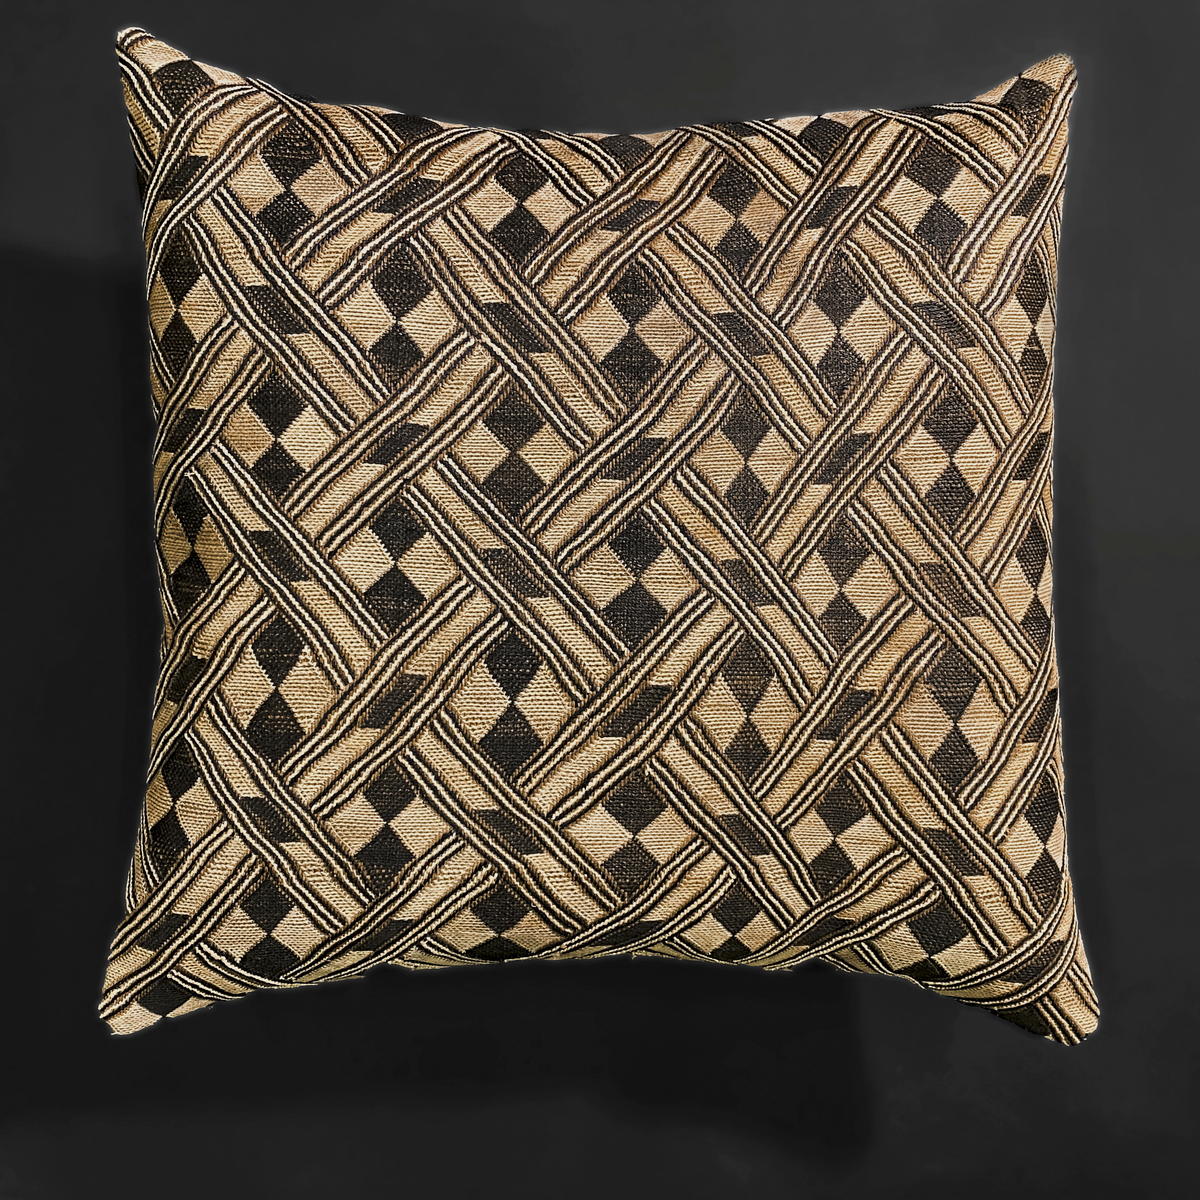 Vintage Kuba Fabric Cushion (Bakuba People, Congo)